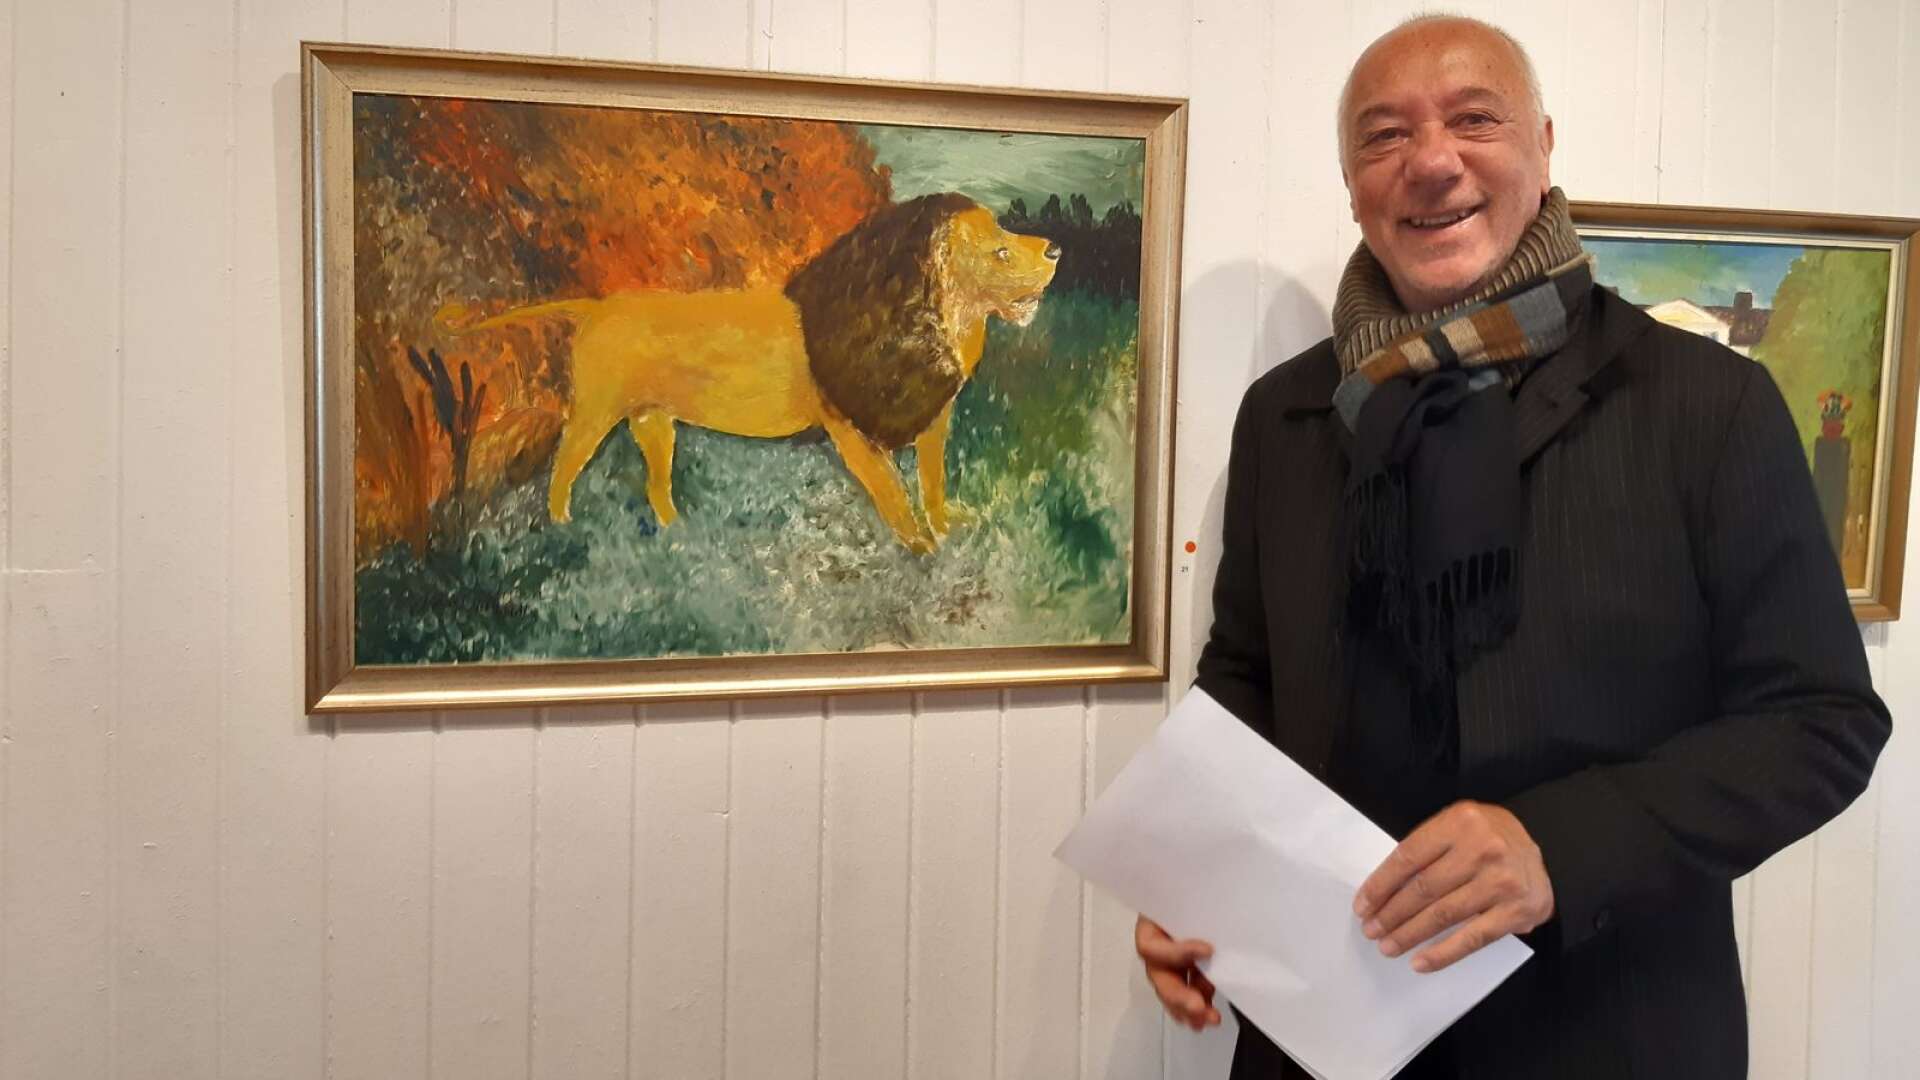 Hugo Catolino köpte målningen föreställande ett lejon. Hugo tycker att Östmans sätt att måla påminner lite om Van Gogh.